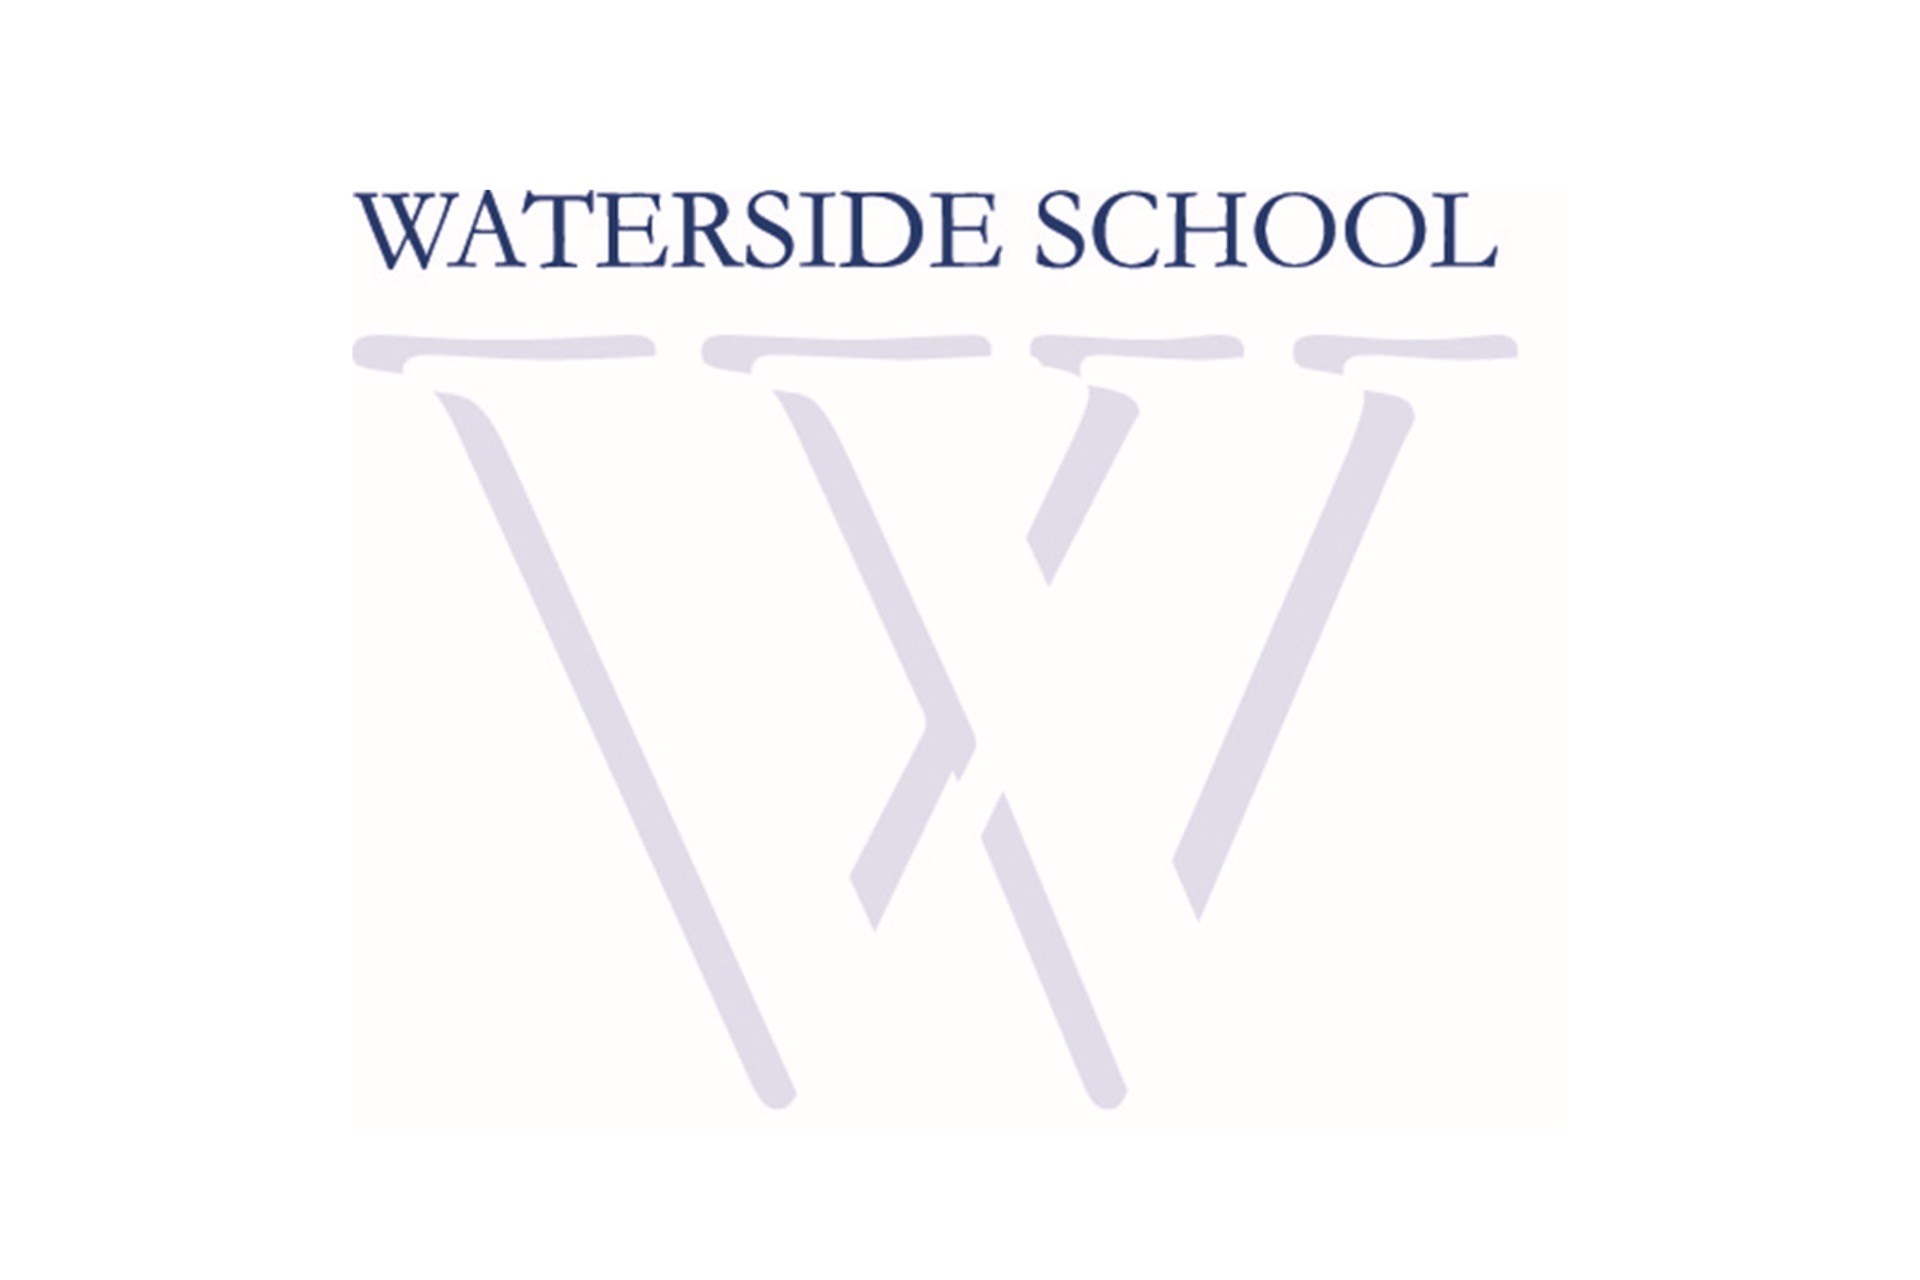 Waterside School